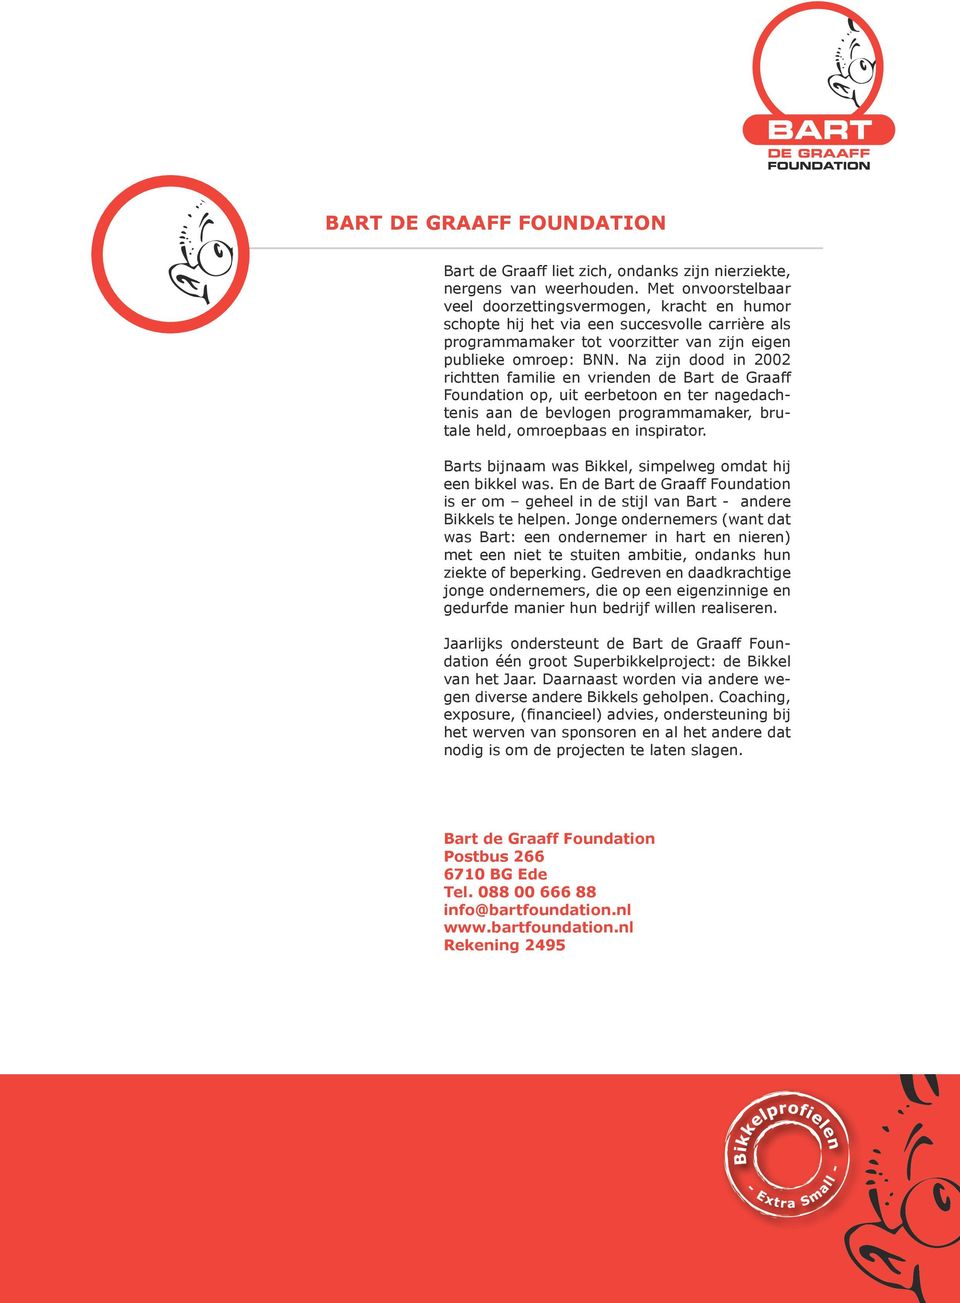 Na zijn dood in 2002 richtten familie en vrienden de Bart de Graaff Foundation op, uit eerbetoon en ter nagedachtenis aan de bevlogen programmamaker, brutale held, omroepbaas en inspirator.